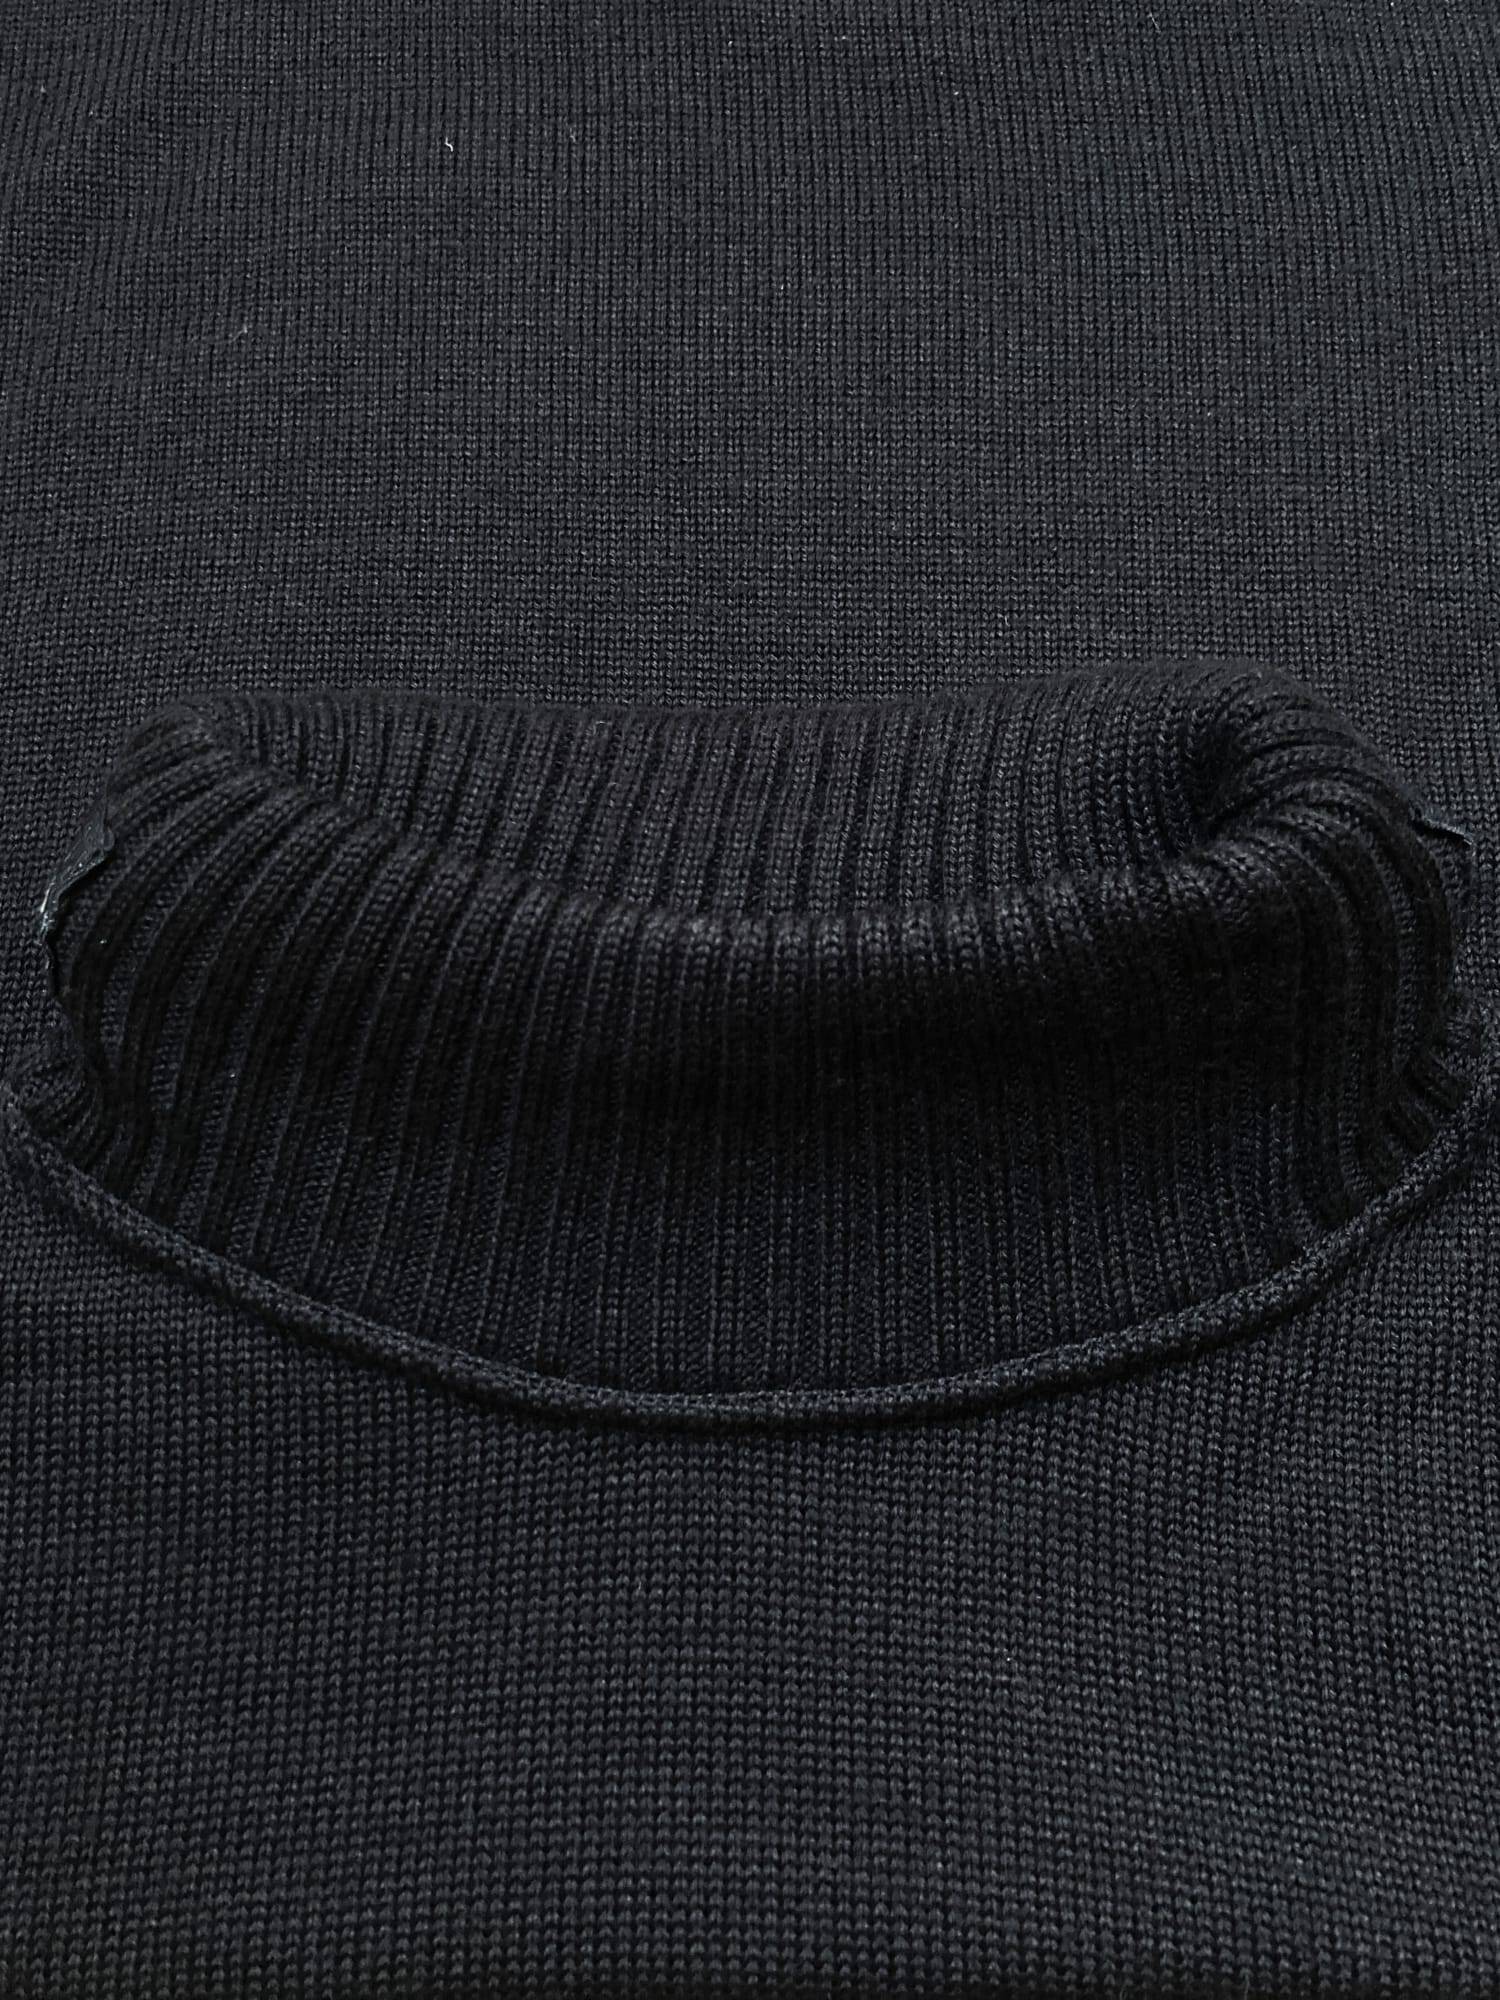 Dirk Bikkembergs black wool mock neck jumper with packable hood - S